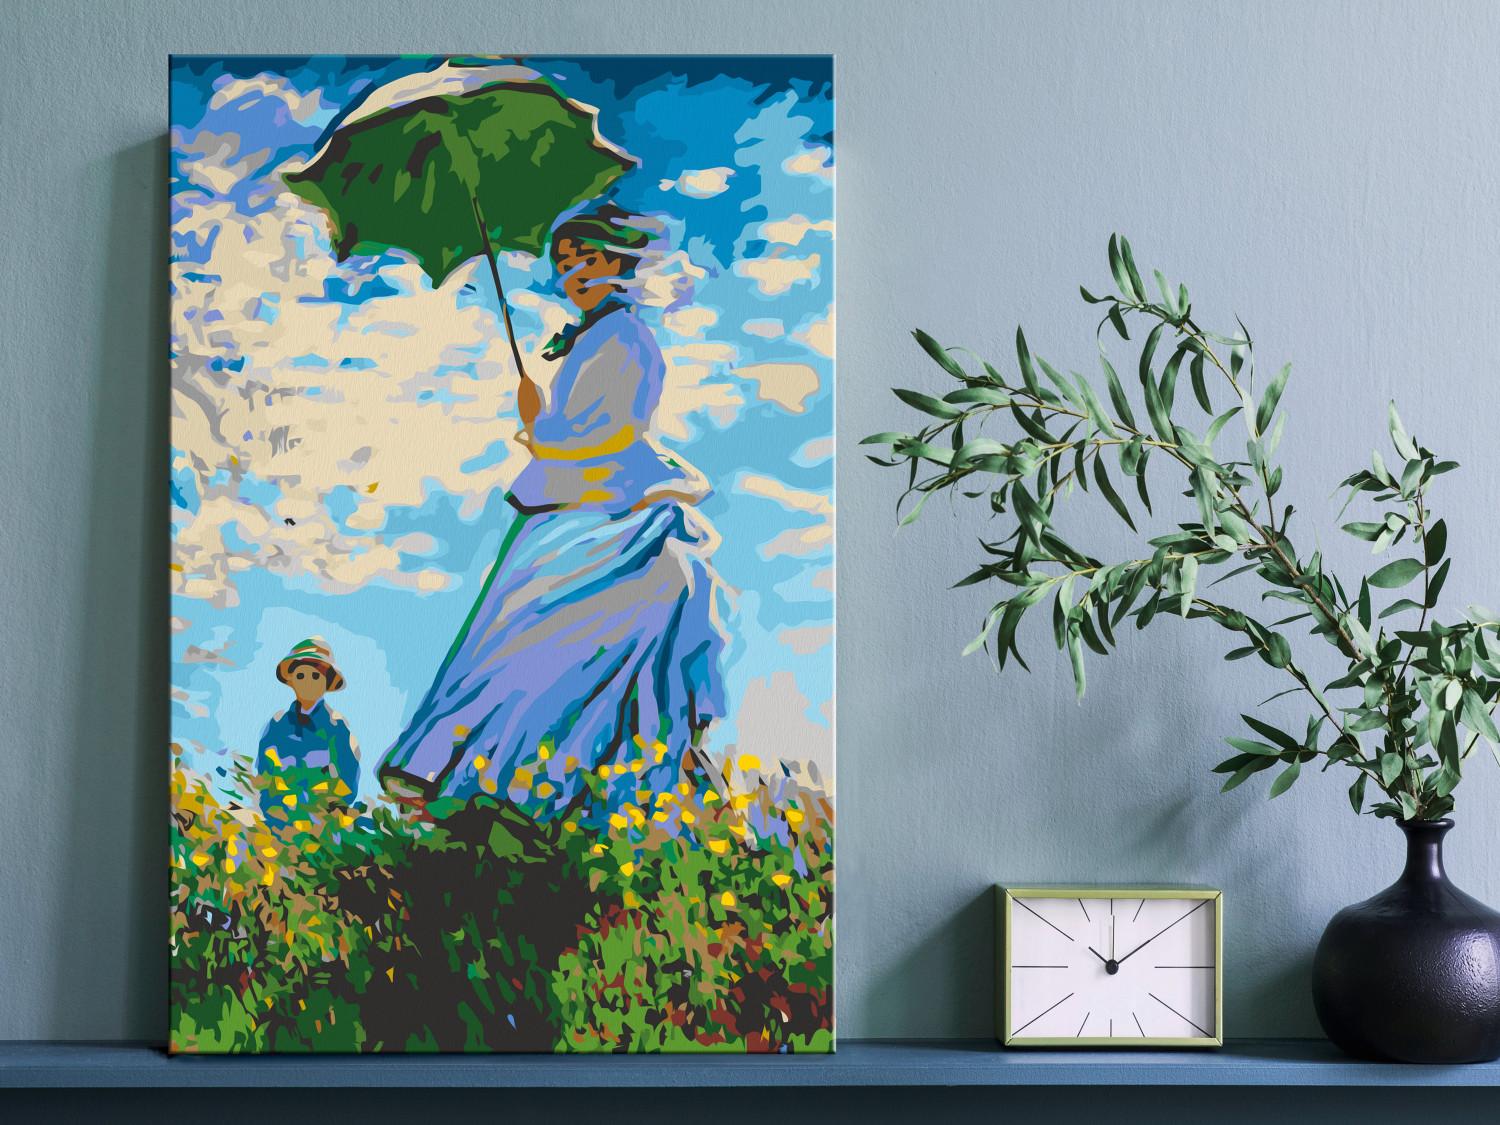 Cuadro para pintar por números Claude Monet: Woman with a Parasol